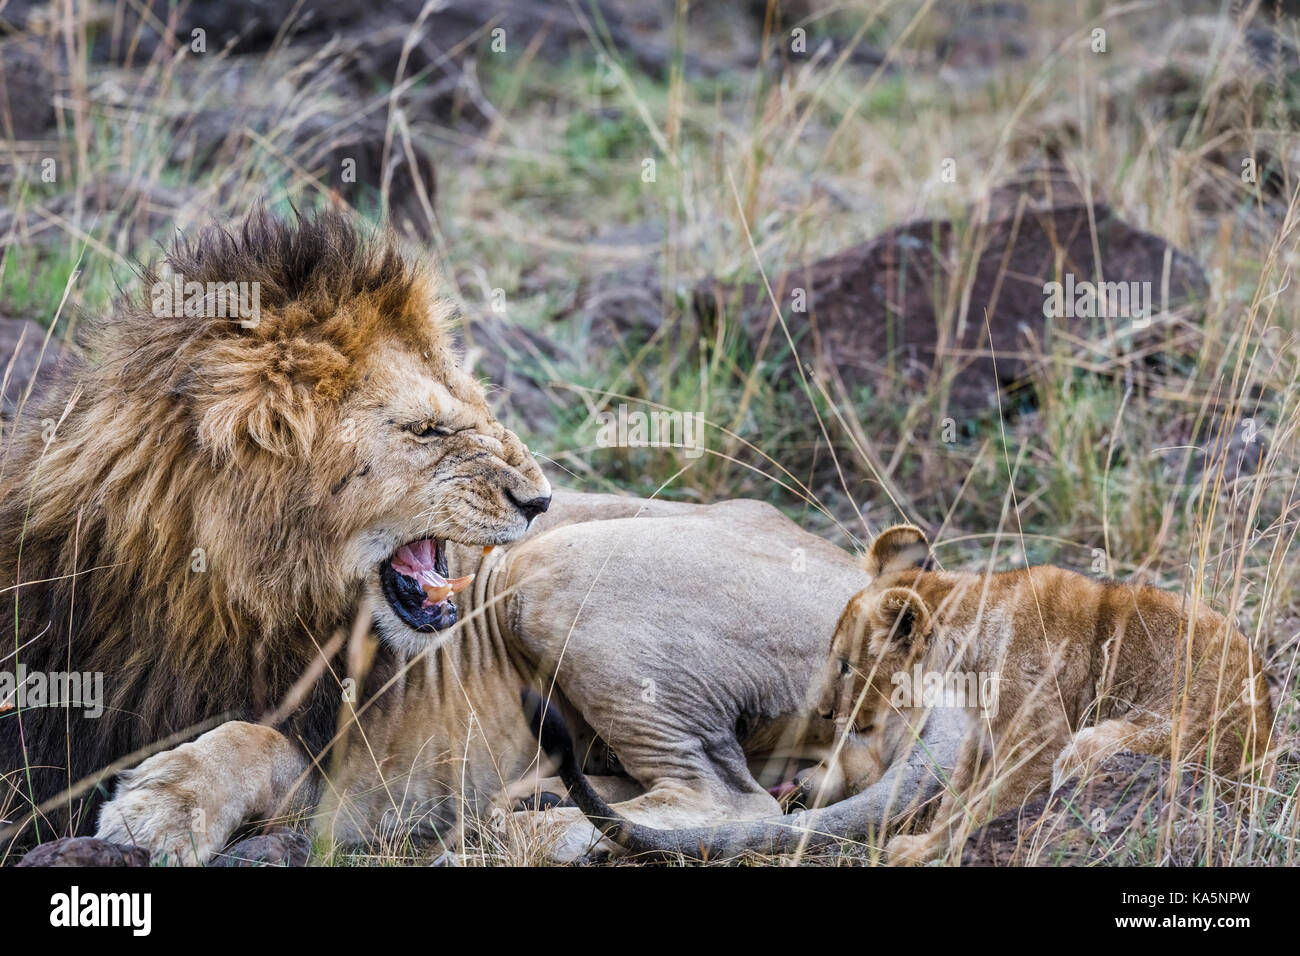 Lion : grogne des adultes mâles agressifs (Mazraat lion Panthera leo) porte ses dents alors qu'il grogne et grognements se recroquevillant à un lion, Masai Mara, Kenya Banque D'Images